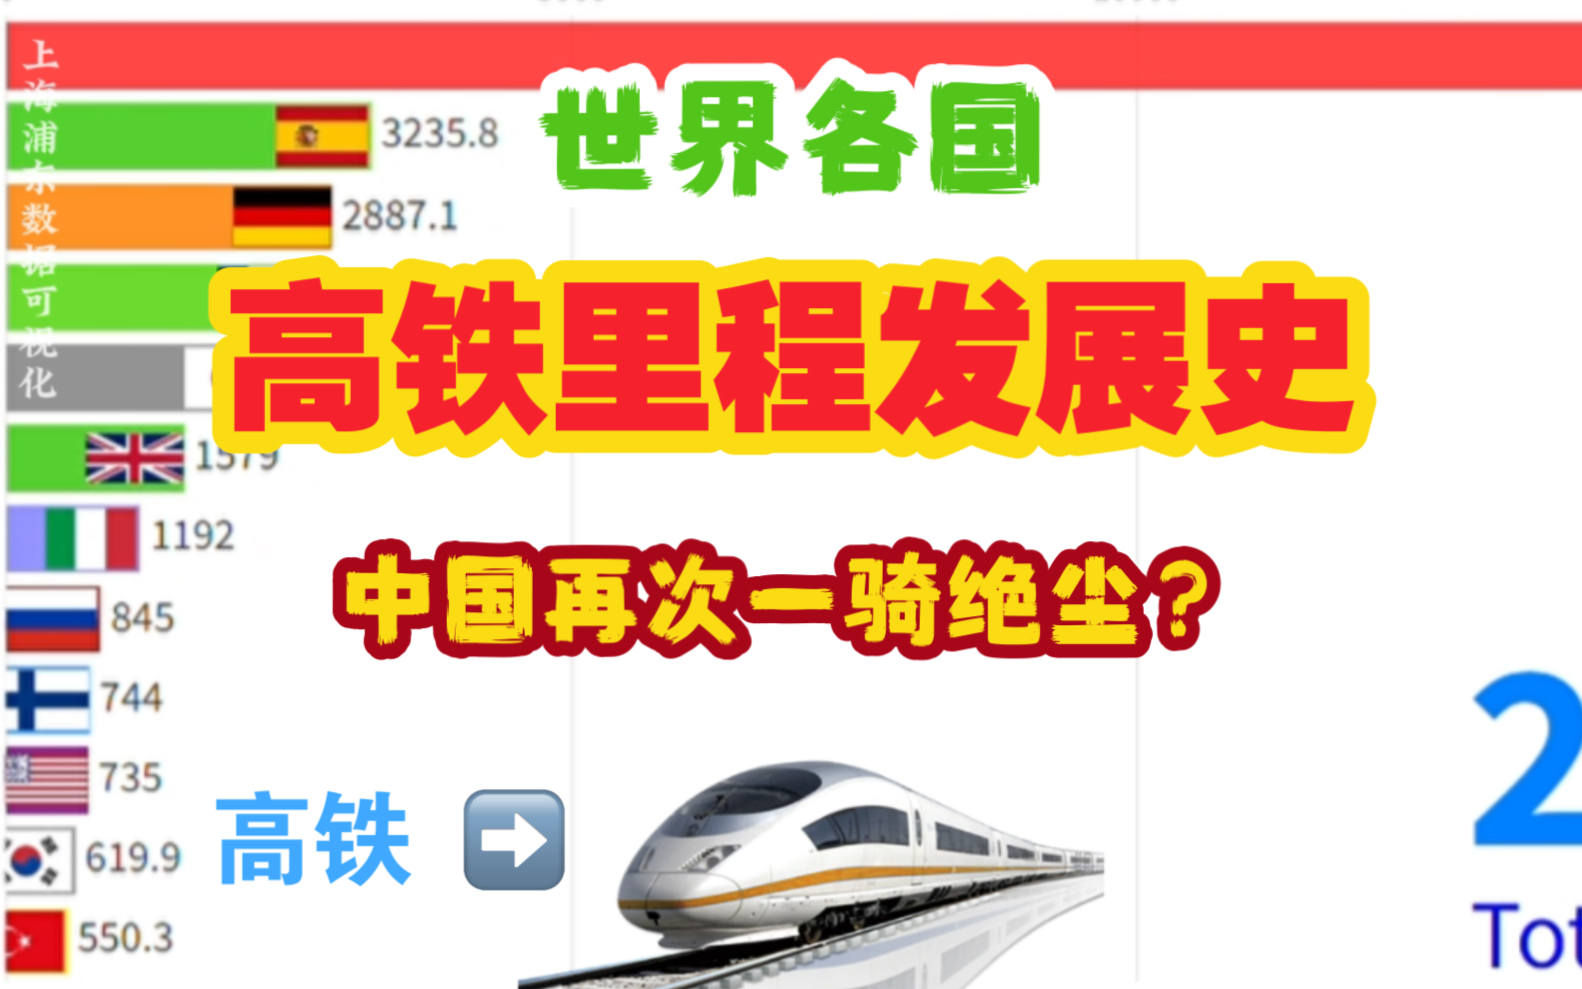 【数据可视化】世界各国高铁里程发展史:中国再次一骑绝尘?